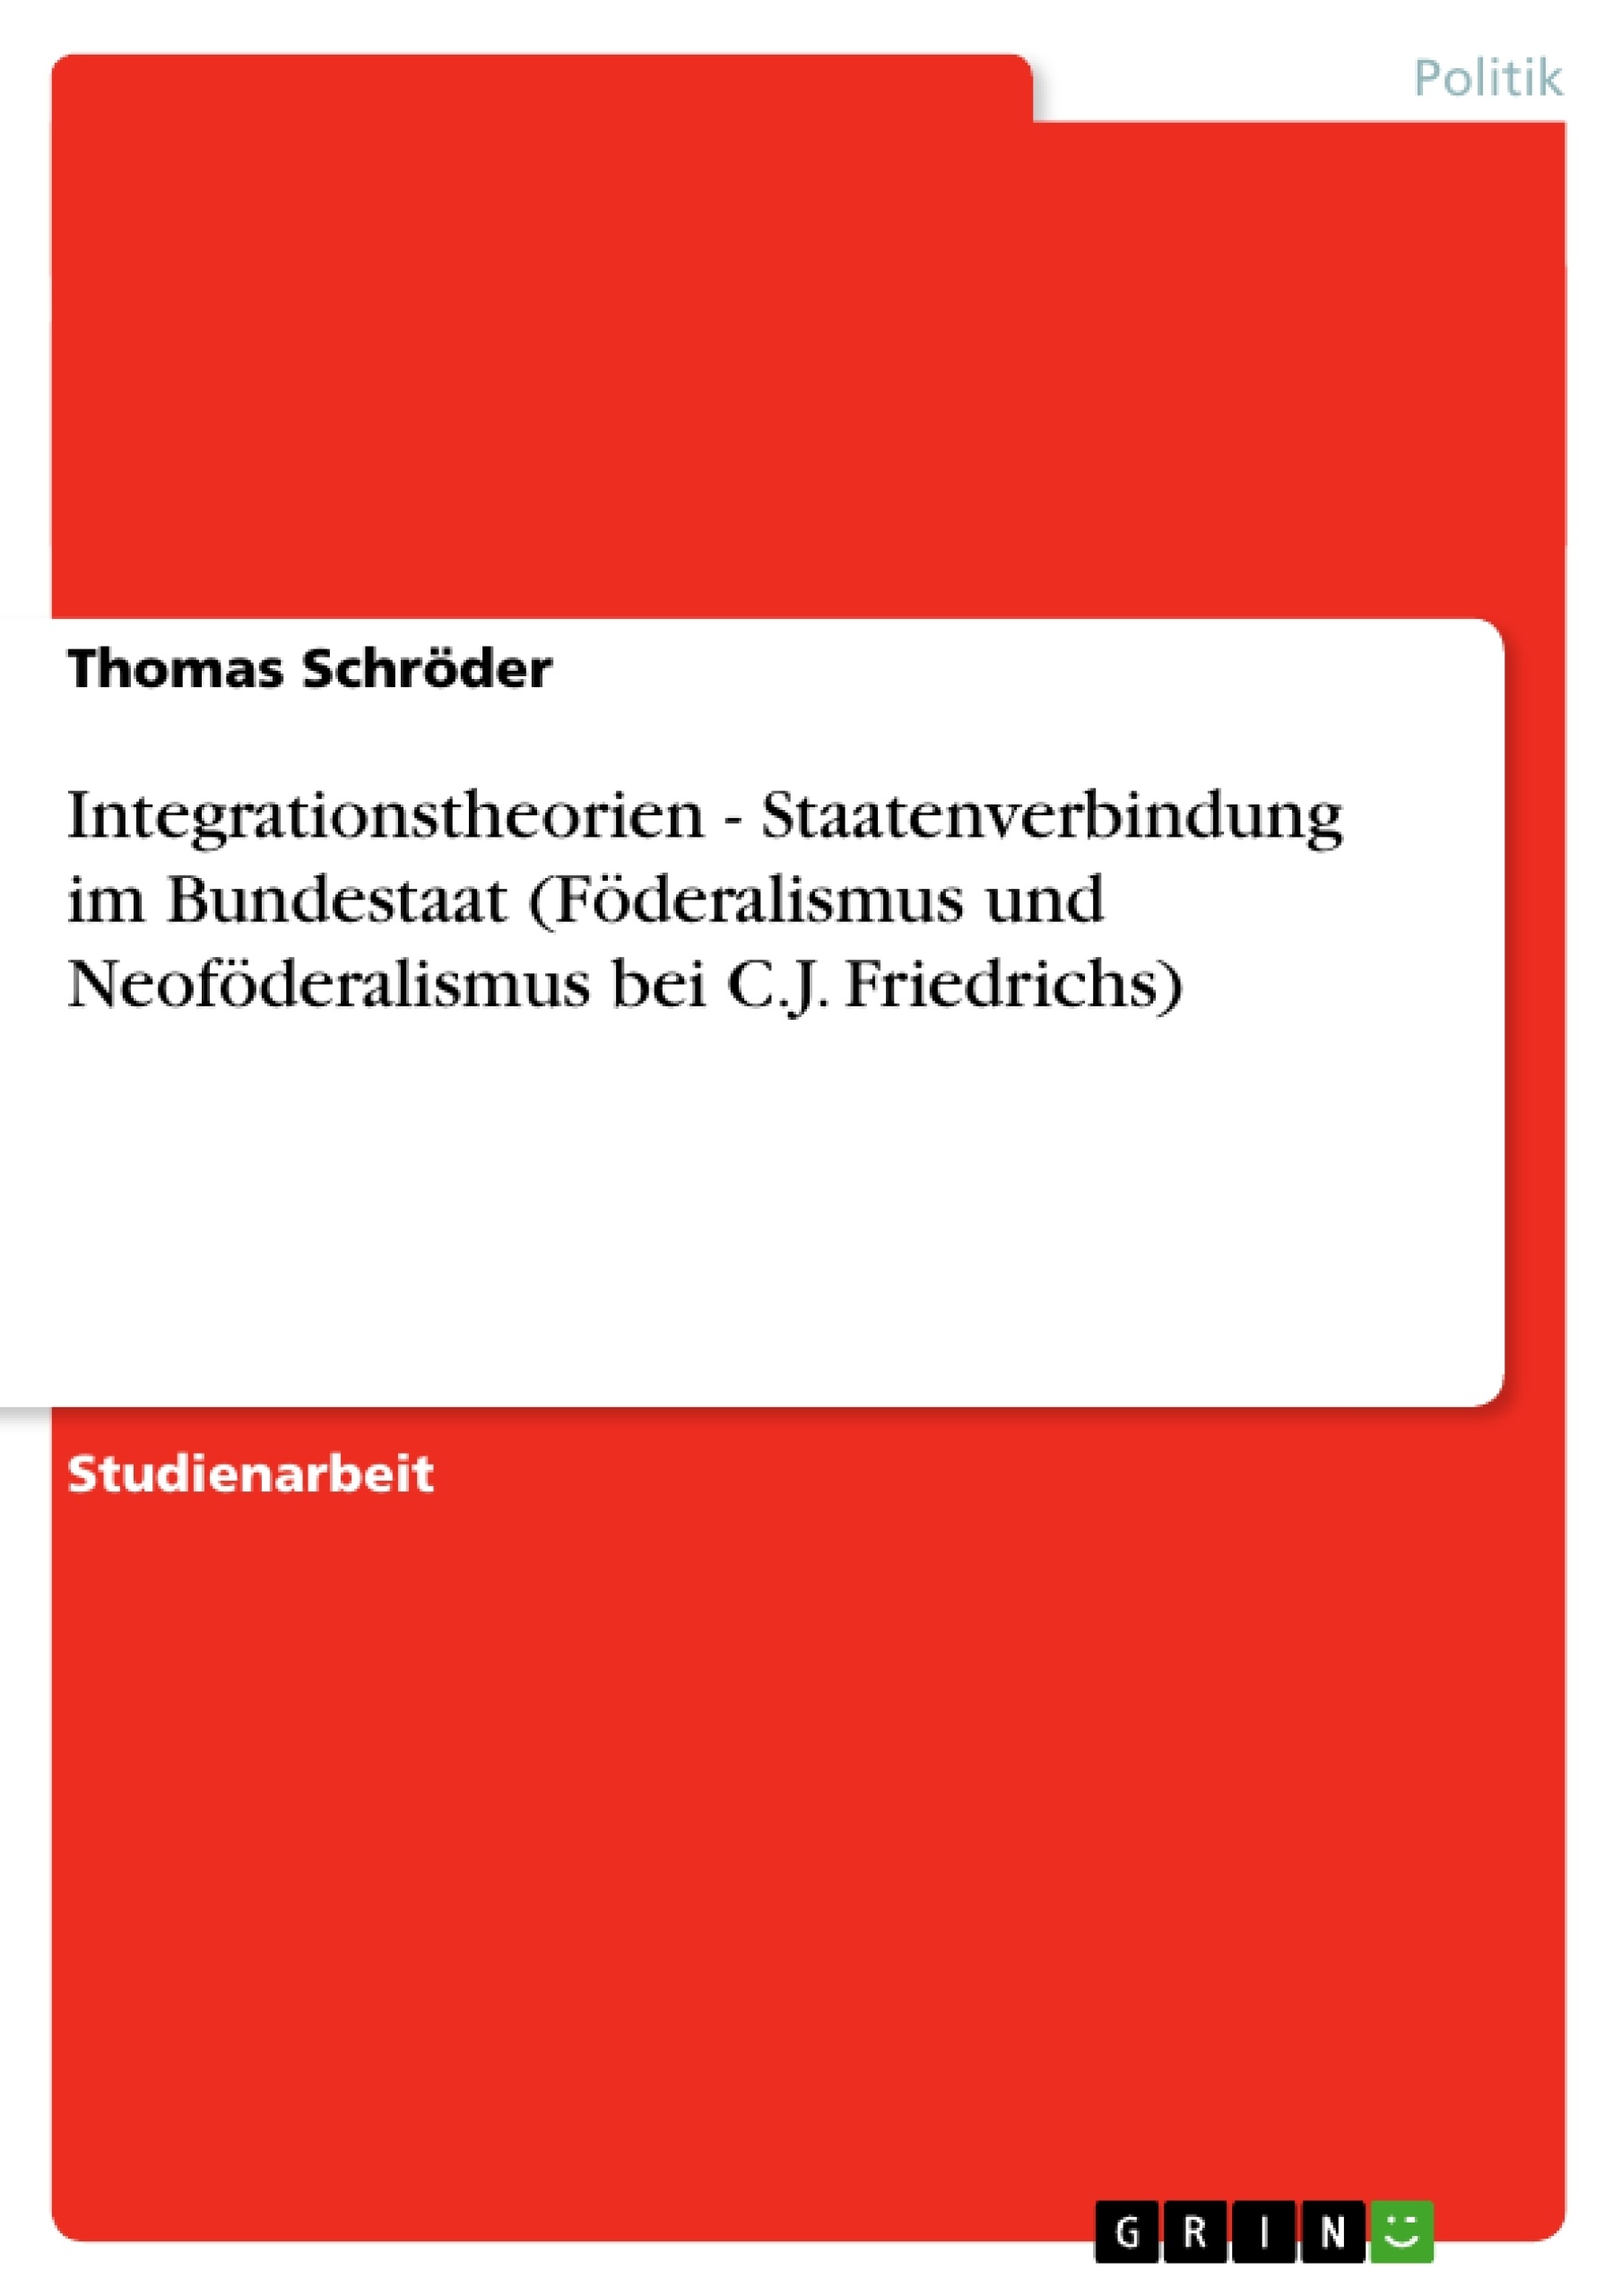 Titre: Integrationstheorien - Staatenverbindung im Bundestaat (Föderalismus und Neoföderalismus bei C.J. Friedrichs)